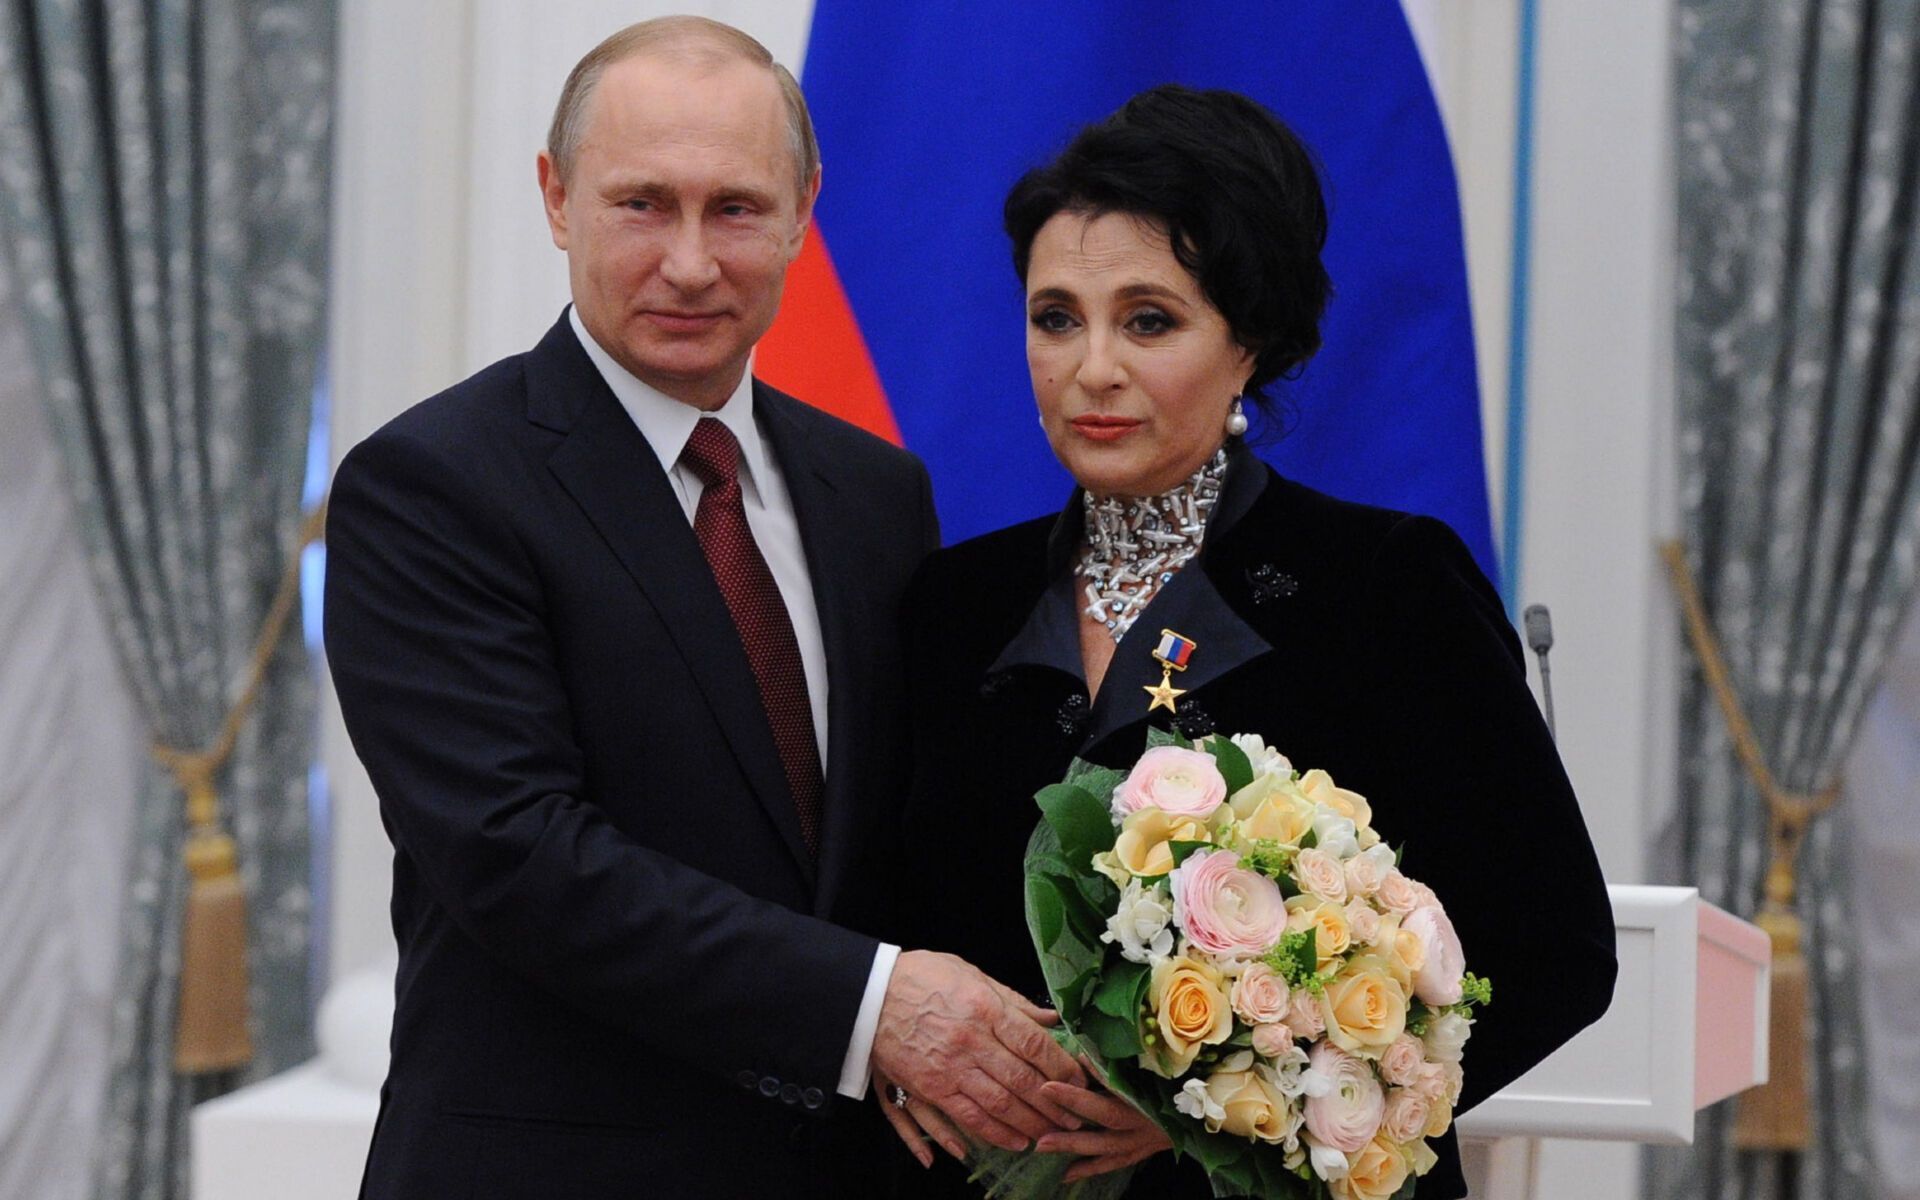 Viner and Putin